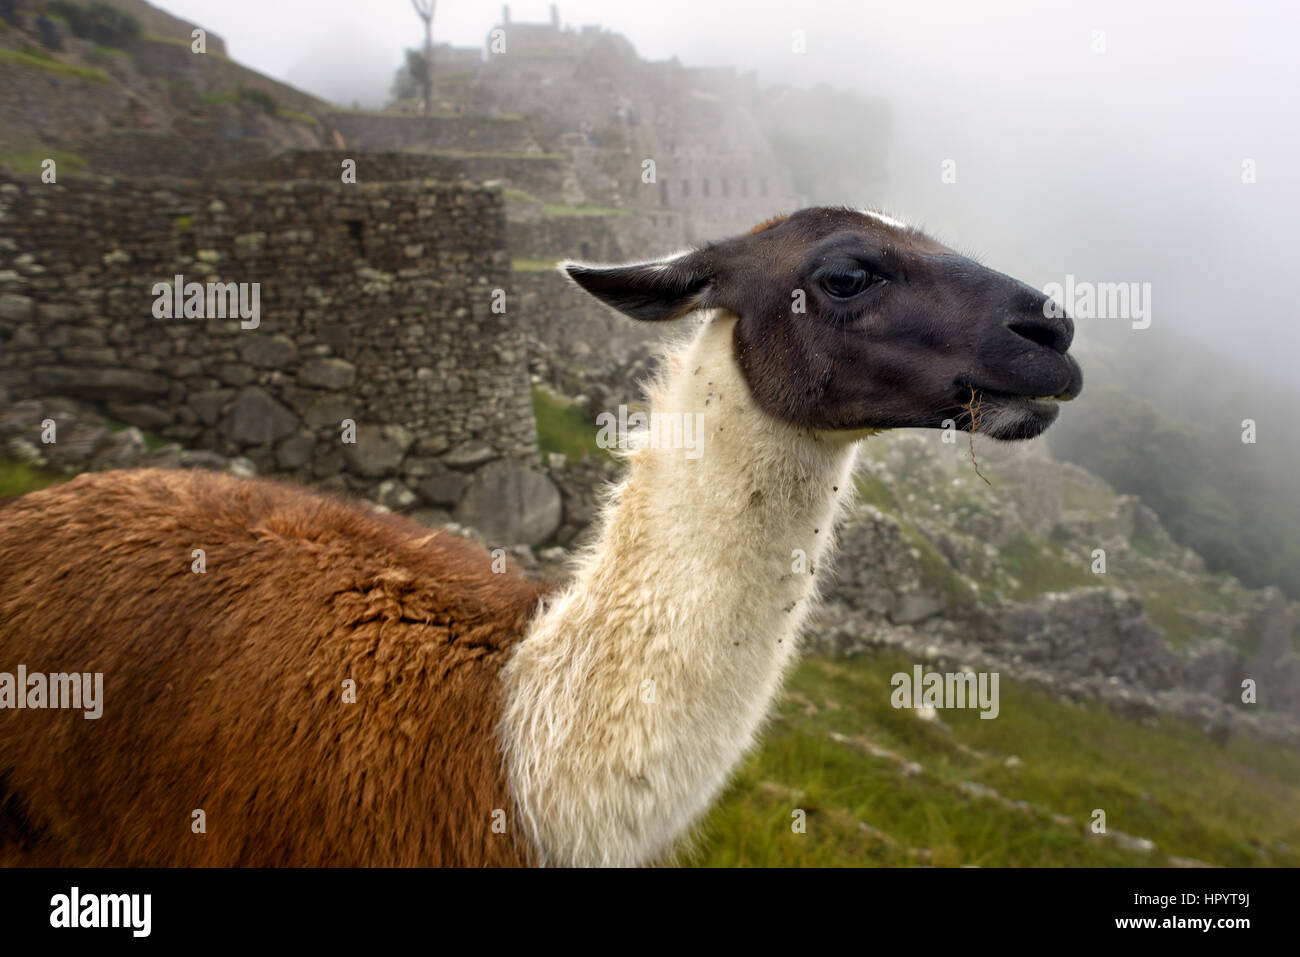 Llama in the ancient city of Machu Picchu, Peru. Stock Photo